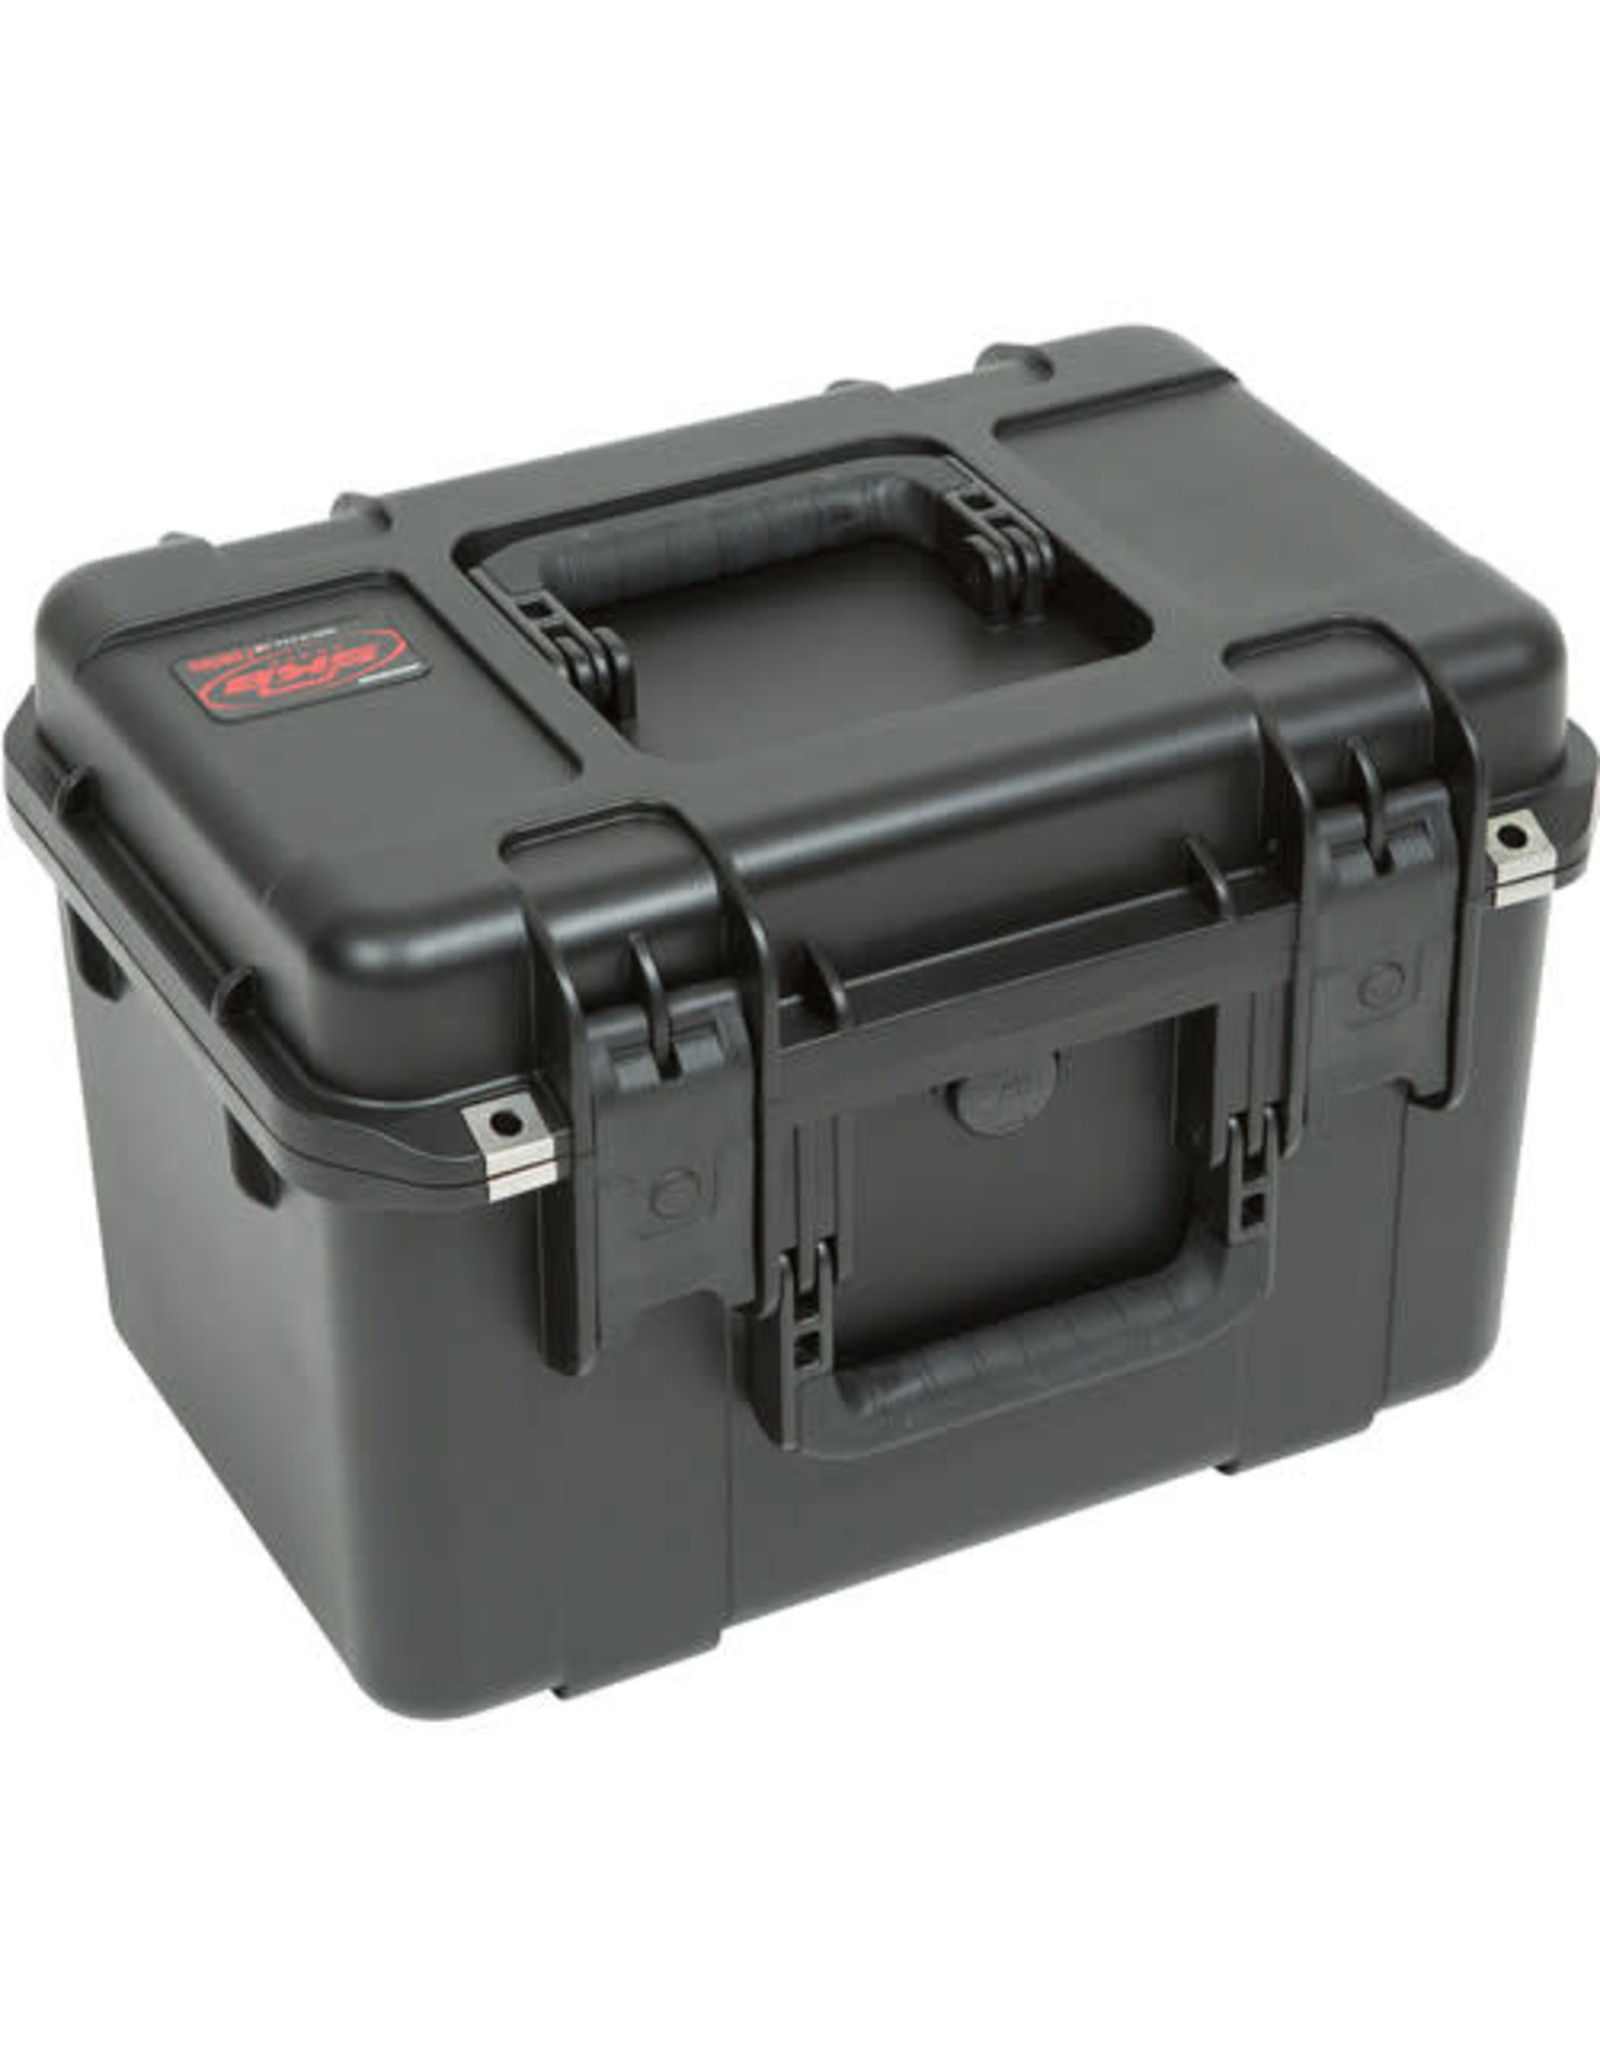 SKB Cases SKB 3i Series 3i-1610-10B-C Case with cubed Foam